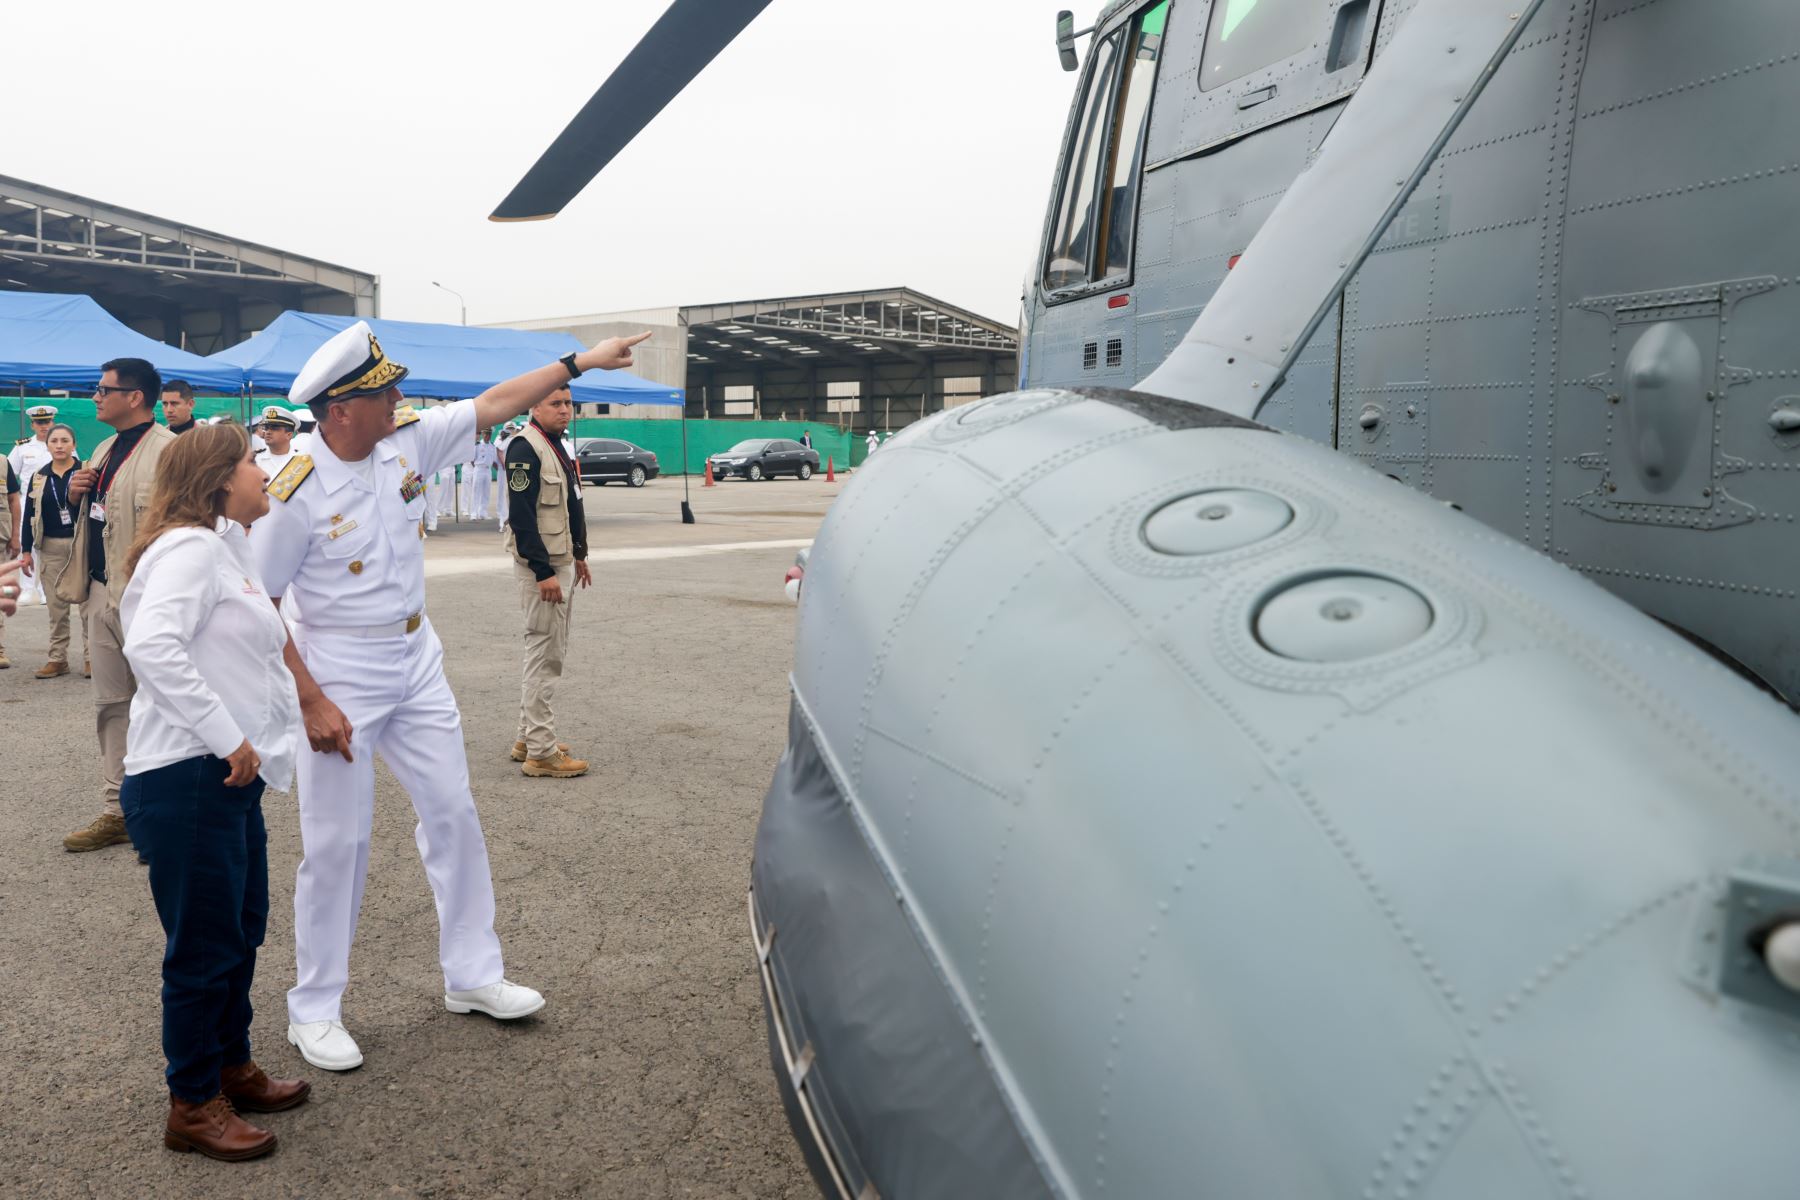 La presidenta Dina Boluarte participó en el acto de incorporación de dos helicópteros Sea King, que aumentarán la capacidad operativa de la flota aérea que posee la Marina de Guerra del Perú. Foto: ANDINA/ Prensa Presidencia